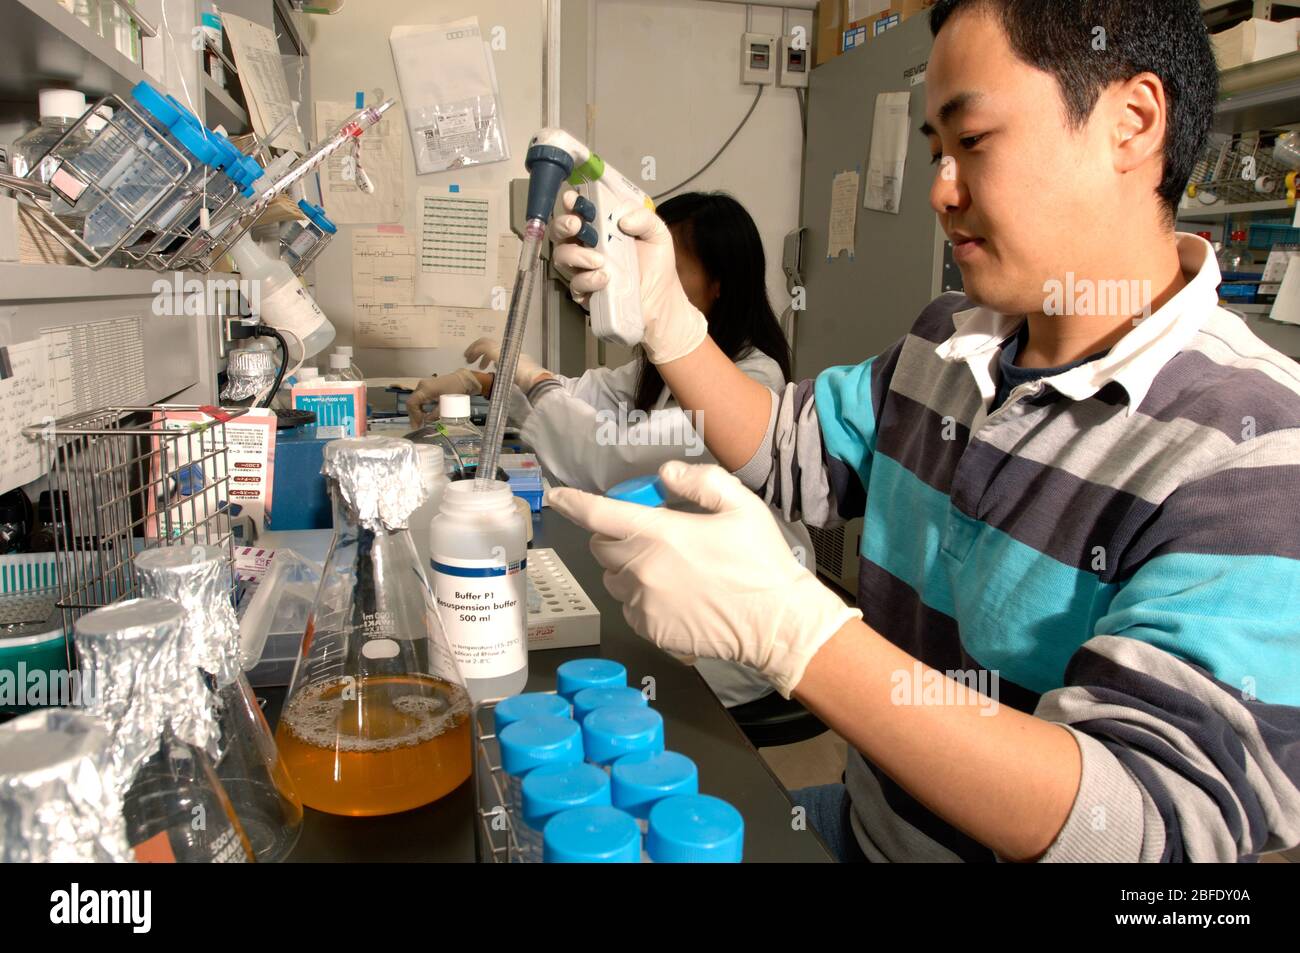 Tecnico in laboratorio presso l'Istituto di Scienze Mediche di frontiera, Università di Kyoto, Giappone, che prepara cellule staminali puripotenti indotte per anima Foto Stock